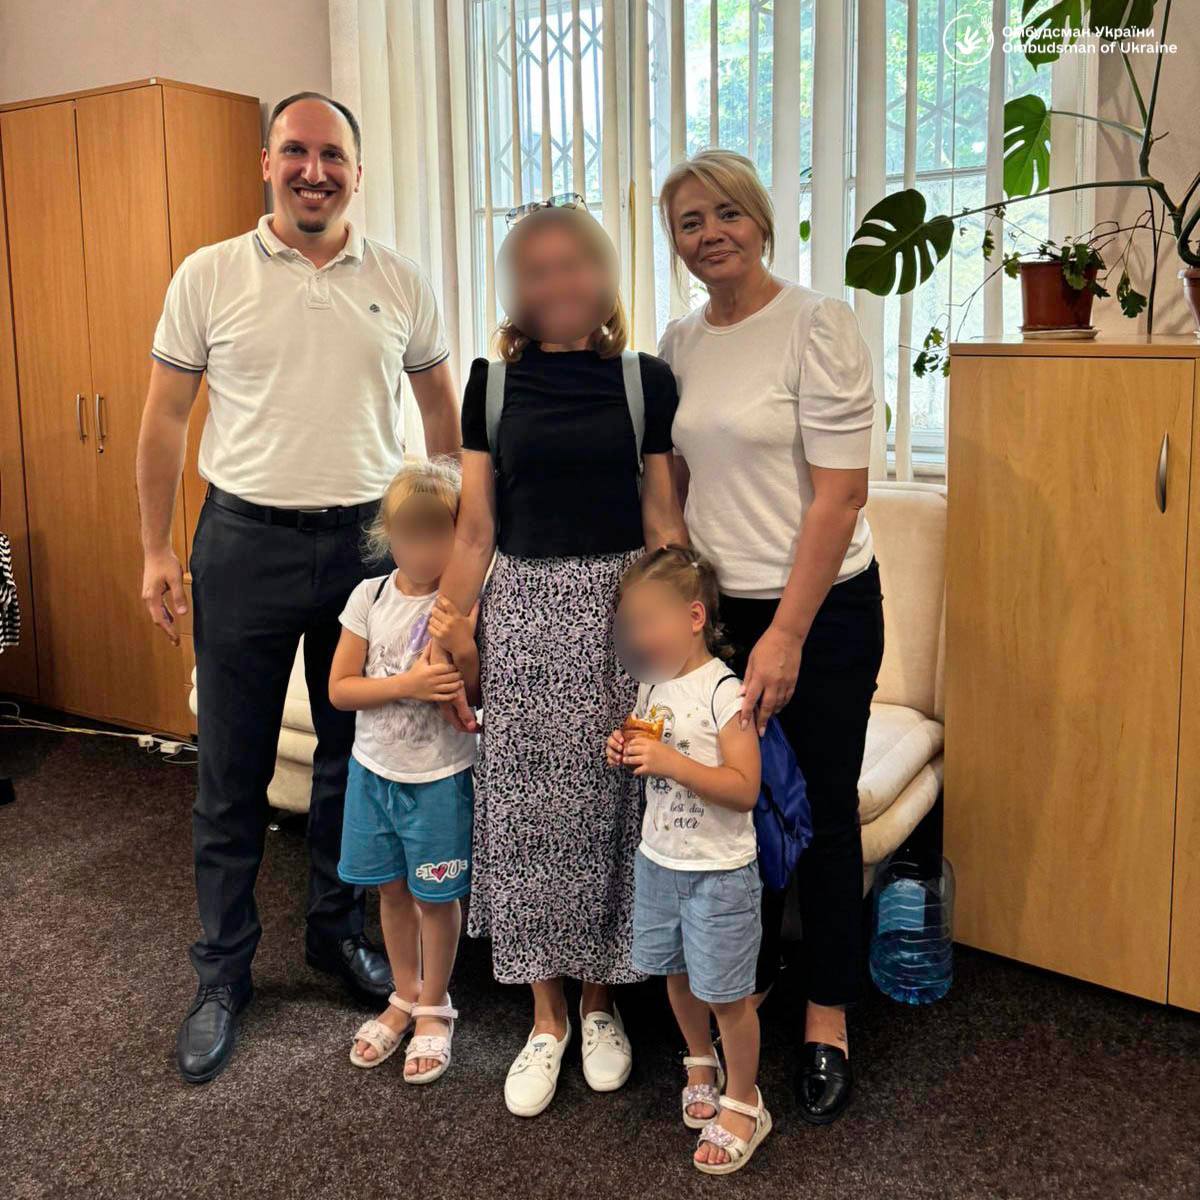 Ще 12 українських дітей вдалося повернути з окупованих територій